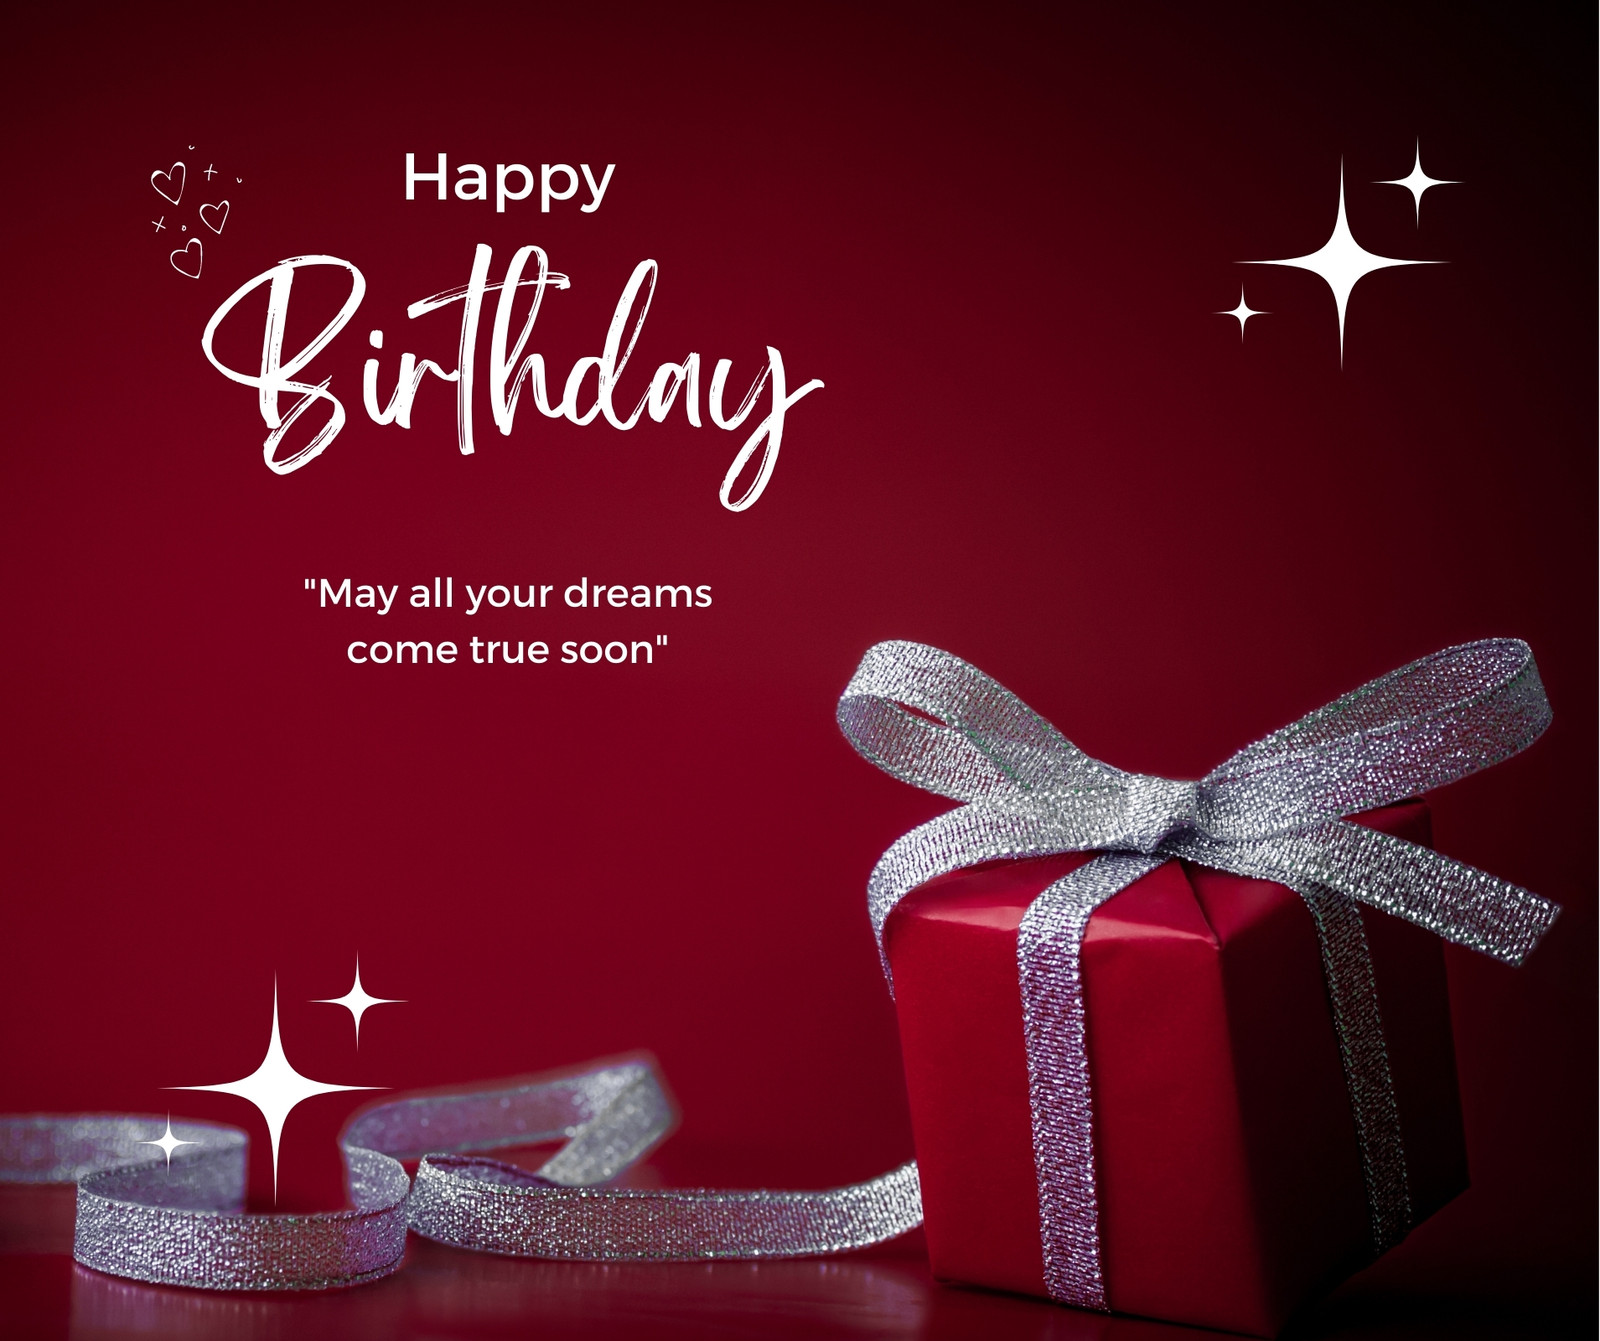 Thiết kế Facebook sinh nhật miễn phí: Sáng tạo và tặng cho bạn bè yêu thương một món quà sinh nhật độc đáo với thiết kế sinh nhật Facebook miễn phí. Hình ảnh đẹp và sáng tạo sẽ giúp bạn có ý tưởng tuyệt vời cho chiếc bánh sinh nhật của mình.